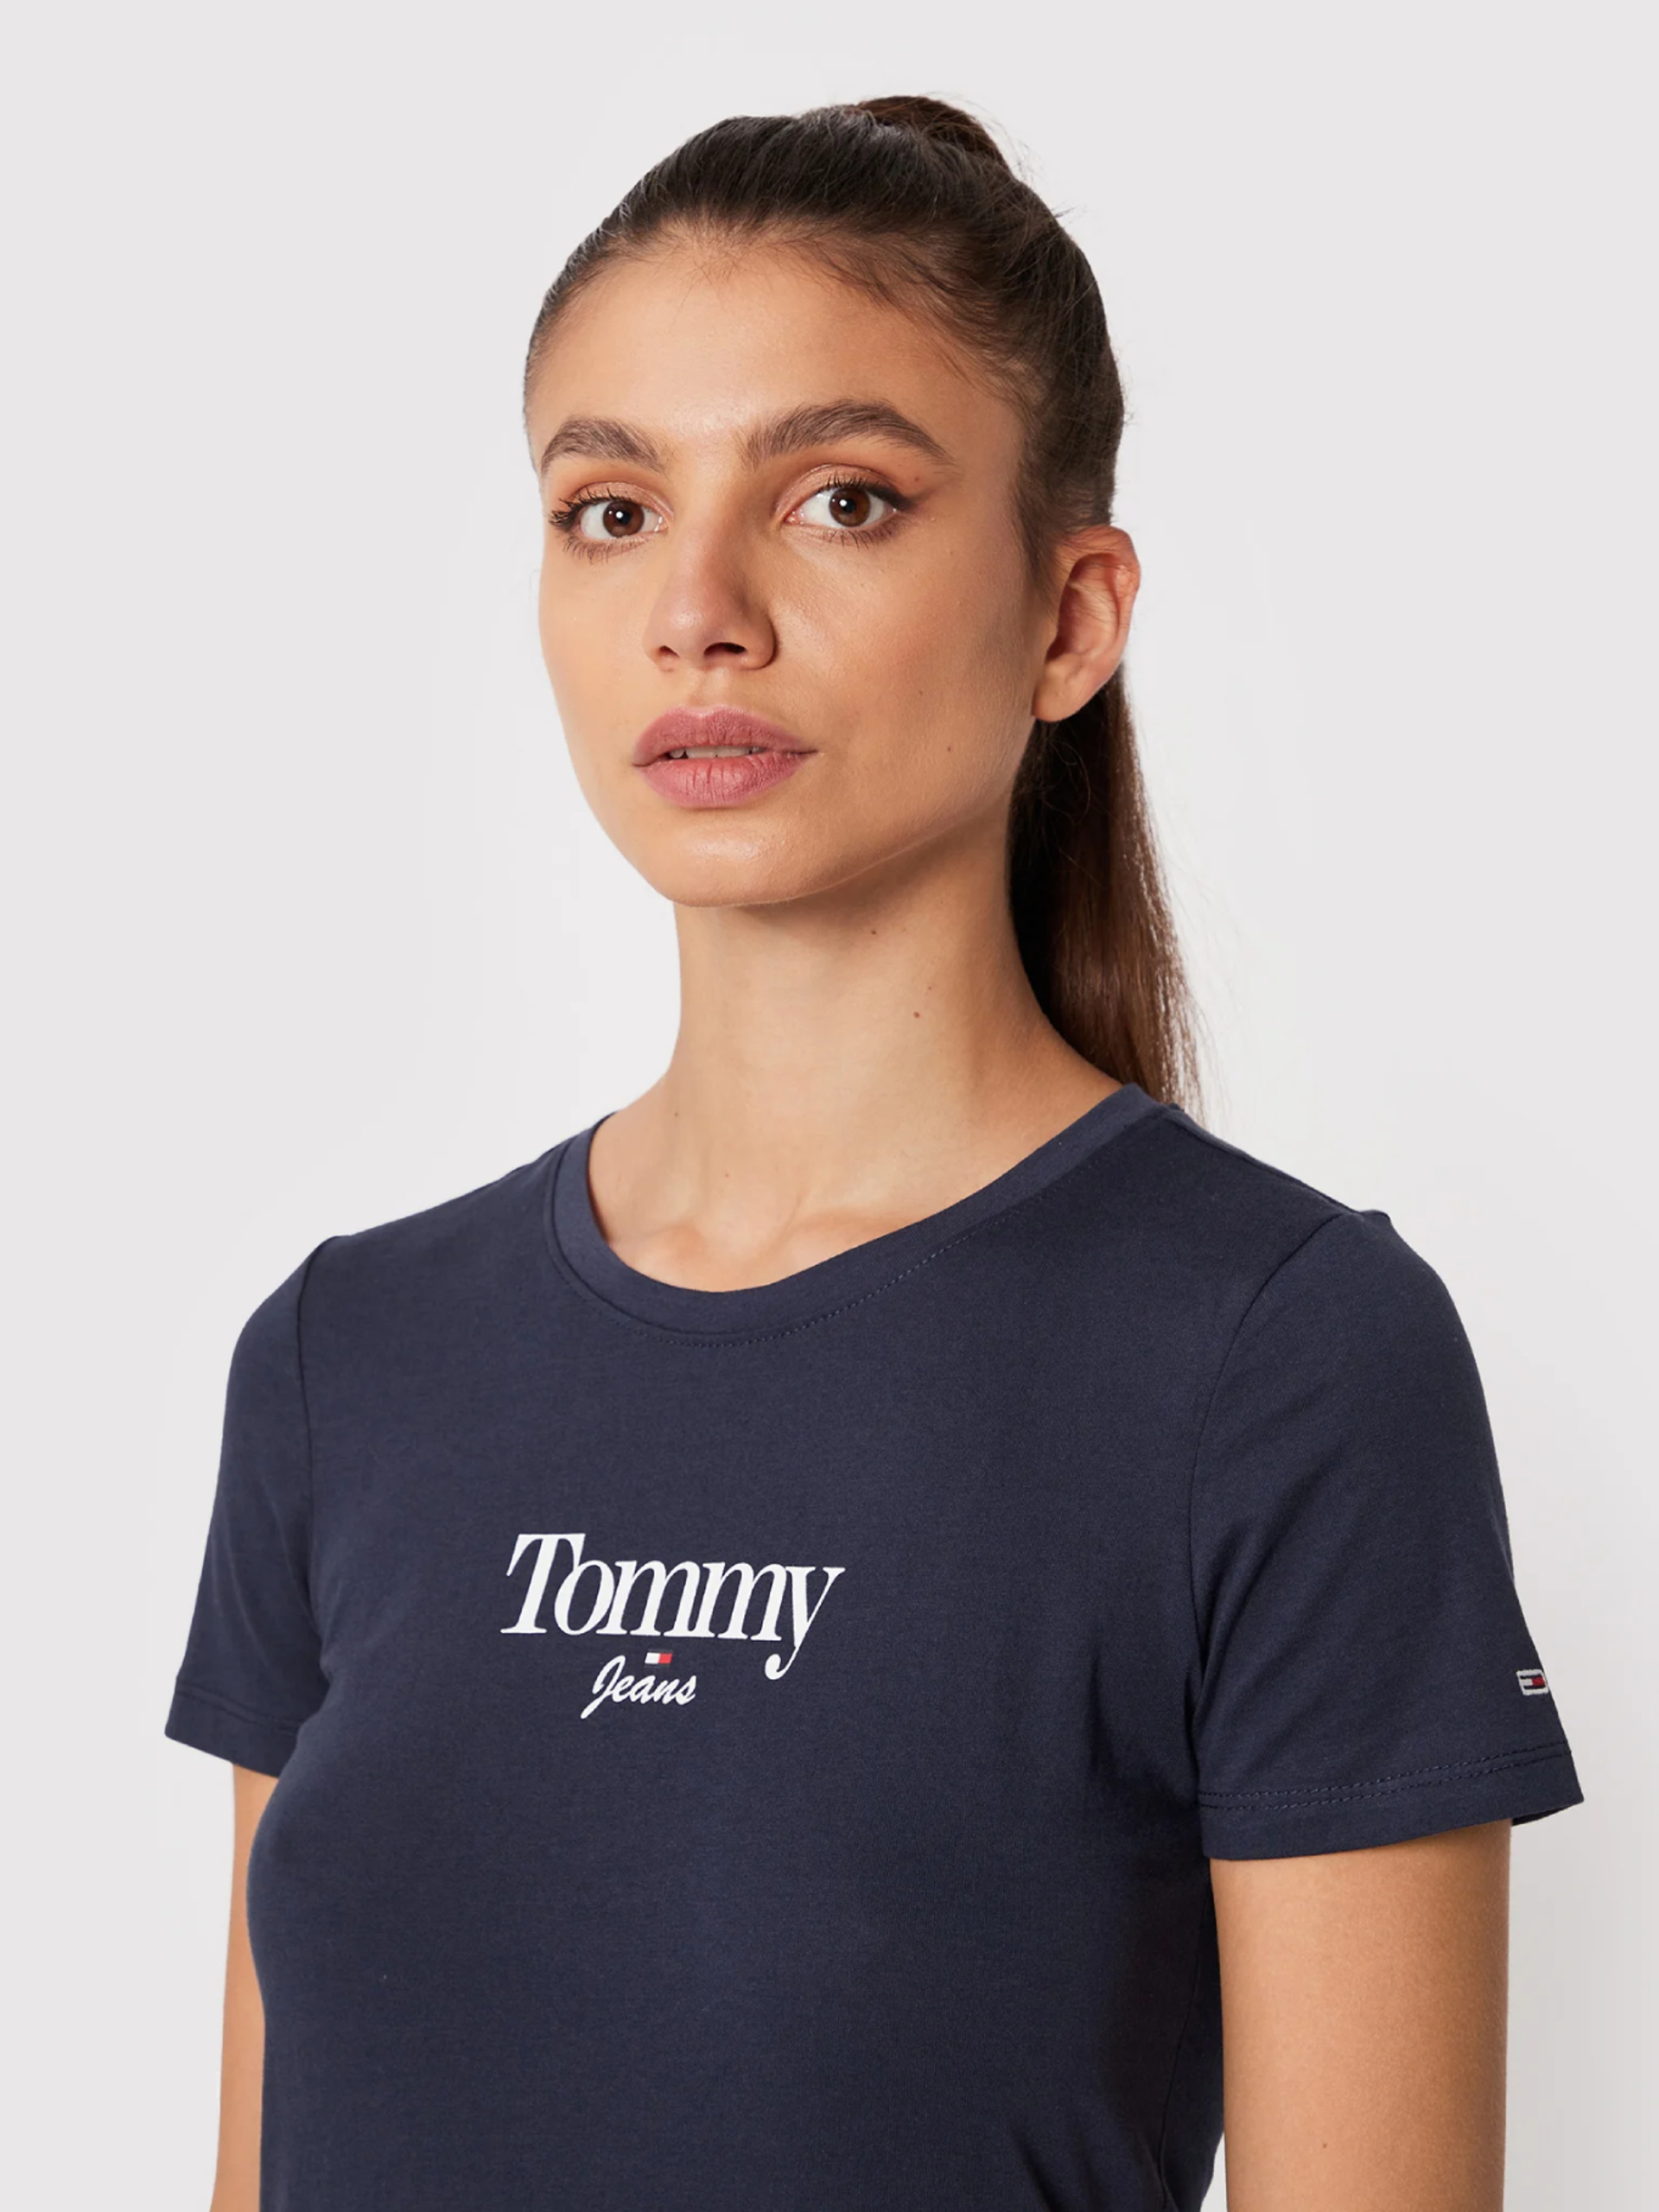 Tommy Jeans dámské modré tričko - L (C87)